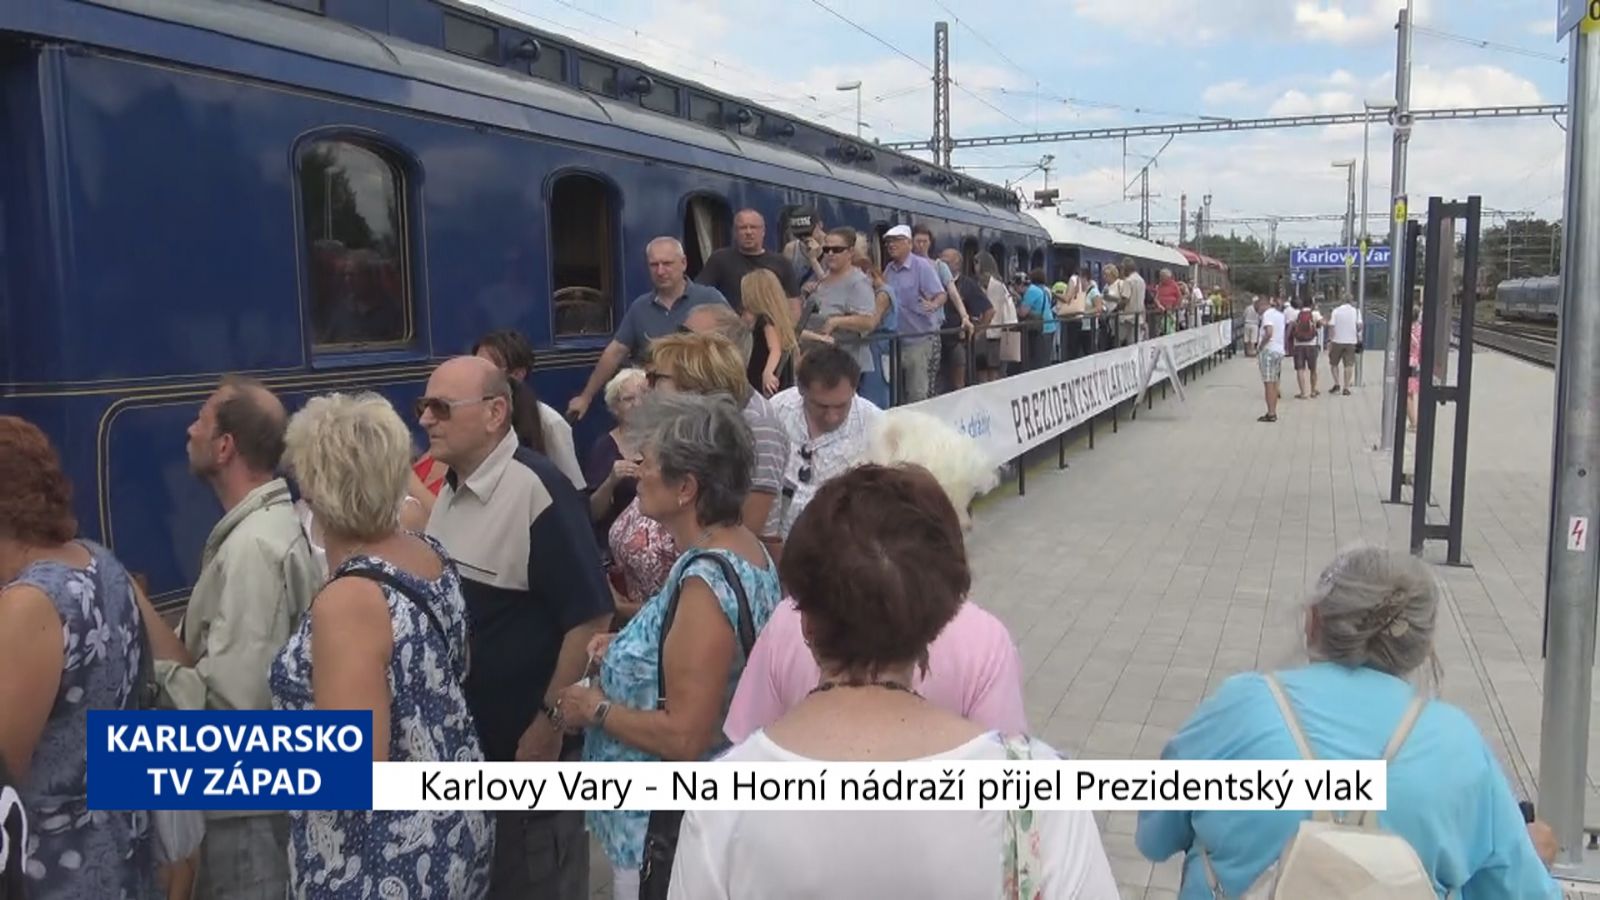 Karlovy Vary: Na Horní nádraží přijel Prezidentský vlak(TV Západ)